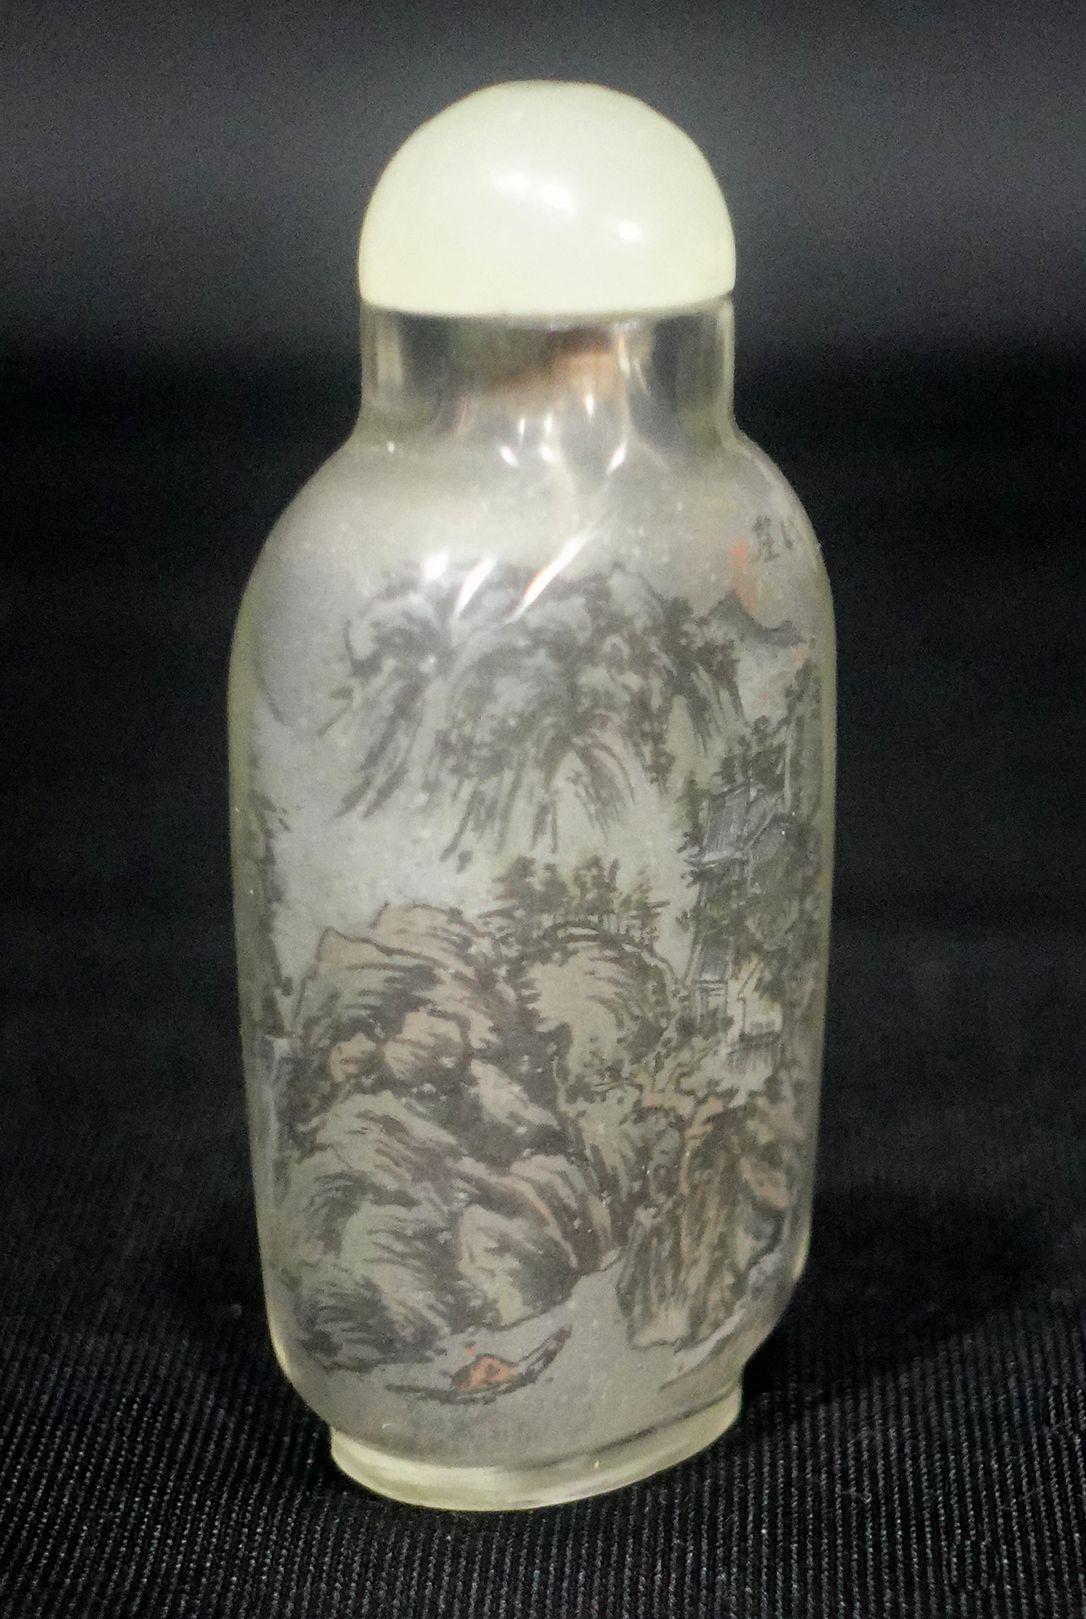 Chinesische Schnupftabakflasche aus Glas mit Innenbemalung, signiert, 19. Jahrhundert, sehr gut bemalte Innenseite des Glases mit Darstellung einer Landschaft auf beiden Seiten in Farben.

 